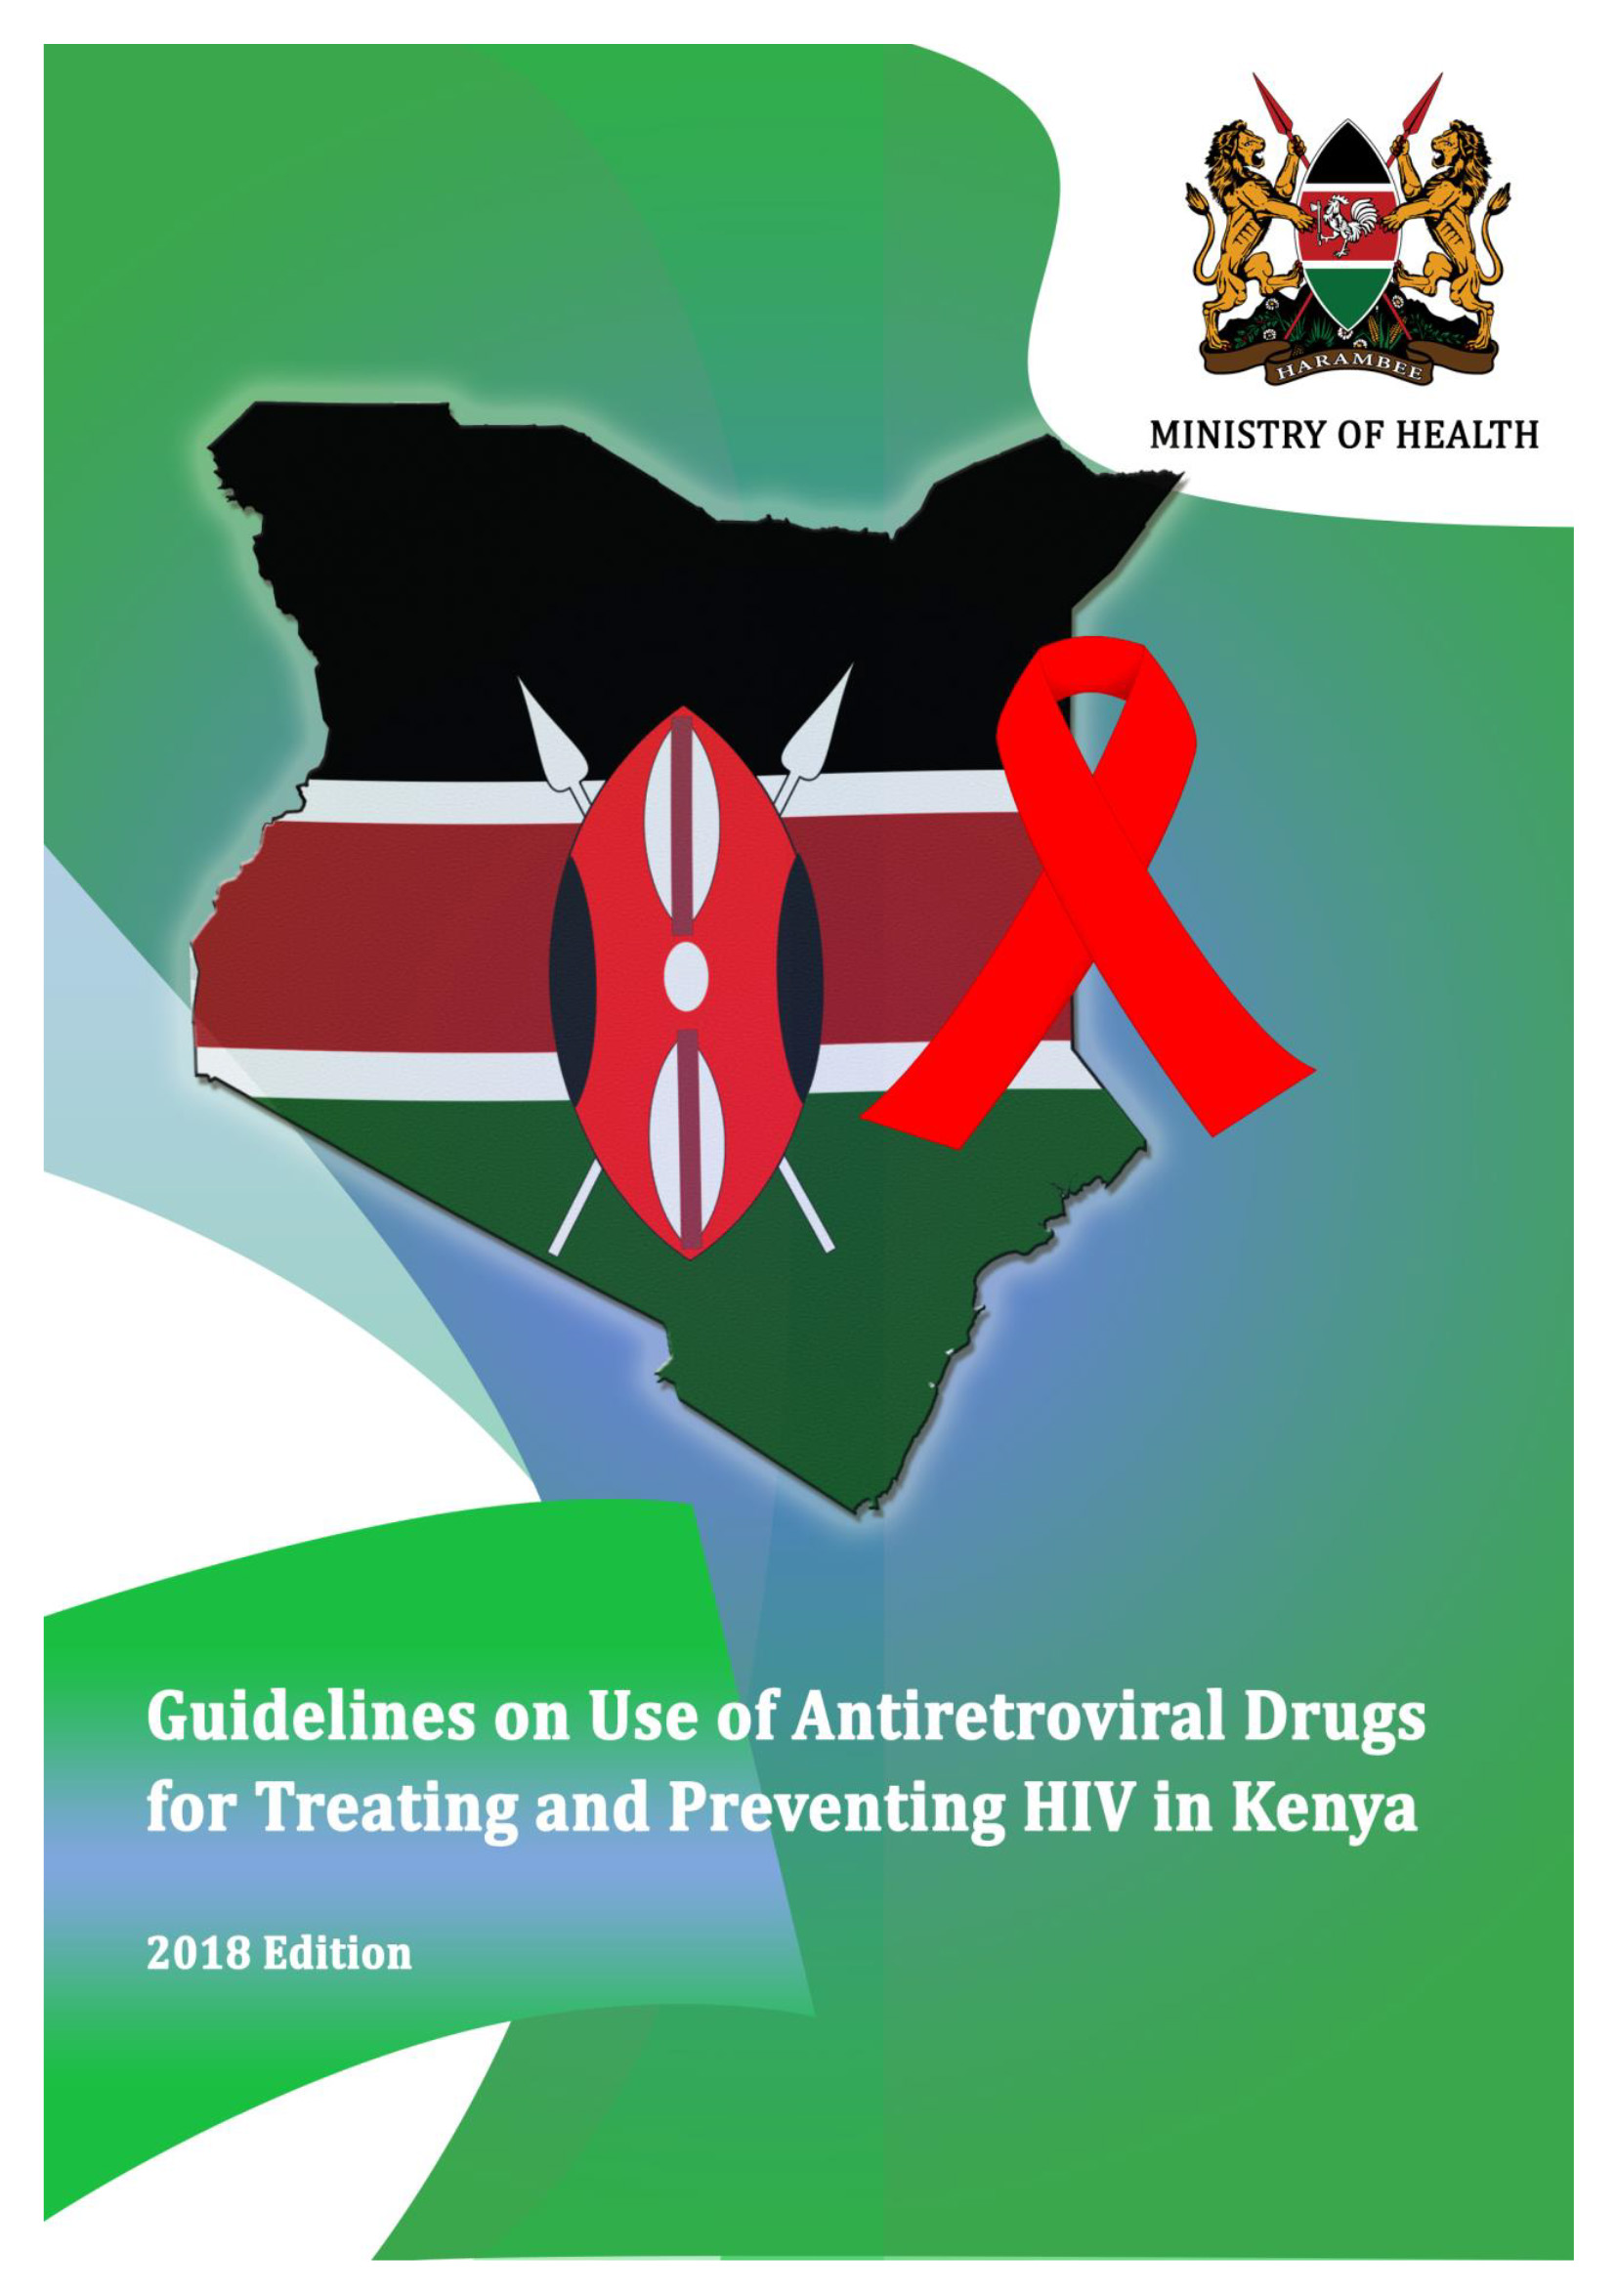 Directrices sobre el uso de medicamentos antirretrovirales para tratar y prevenir el VIH en Kenia, 2018